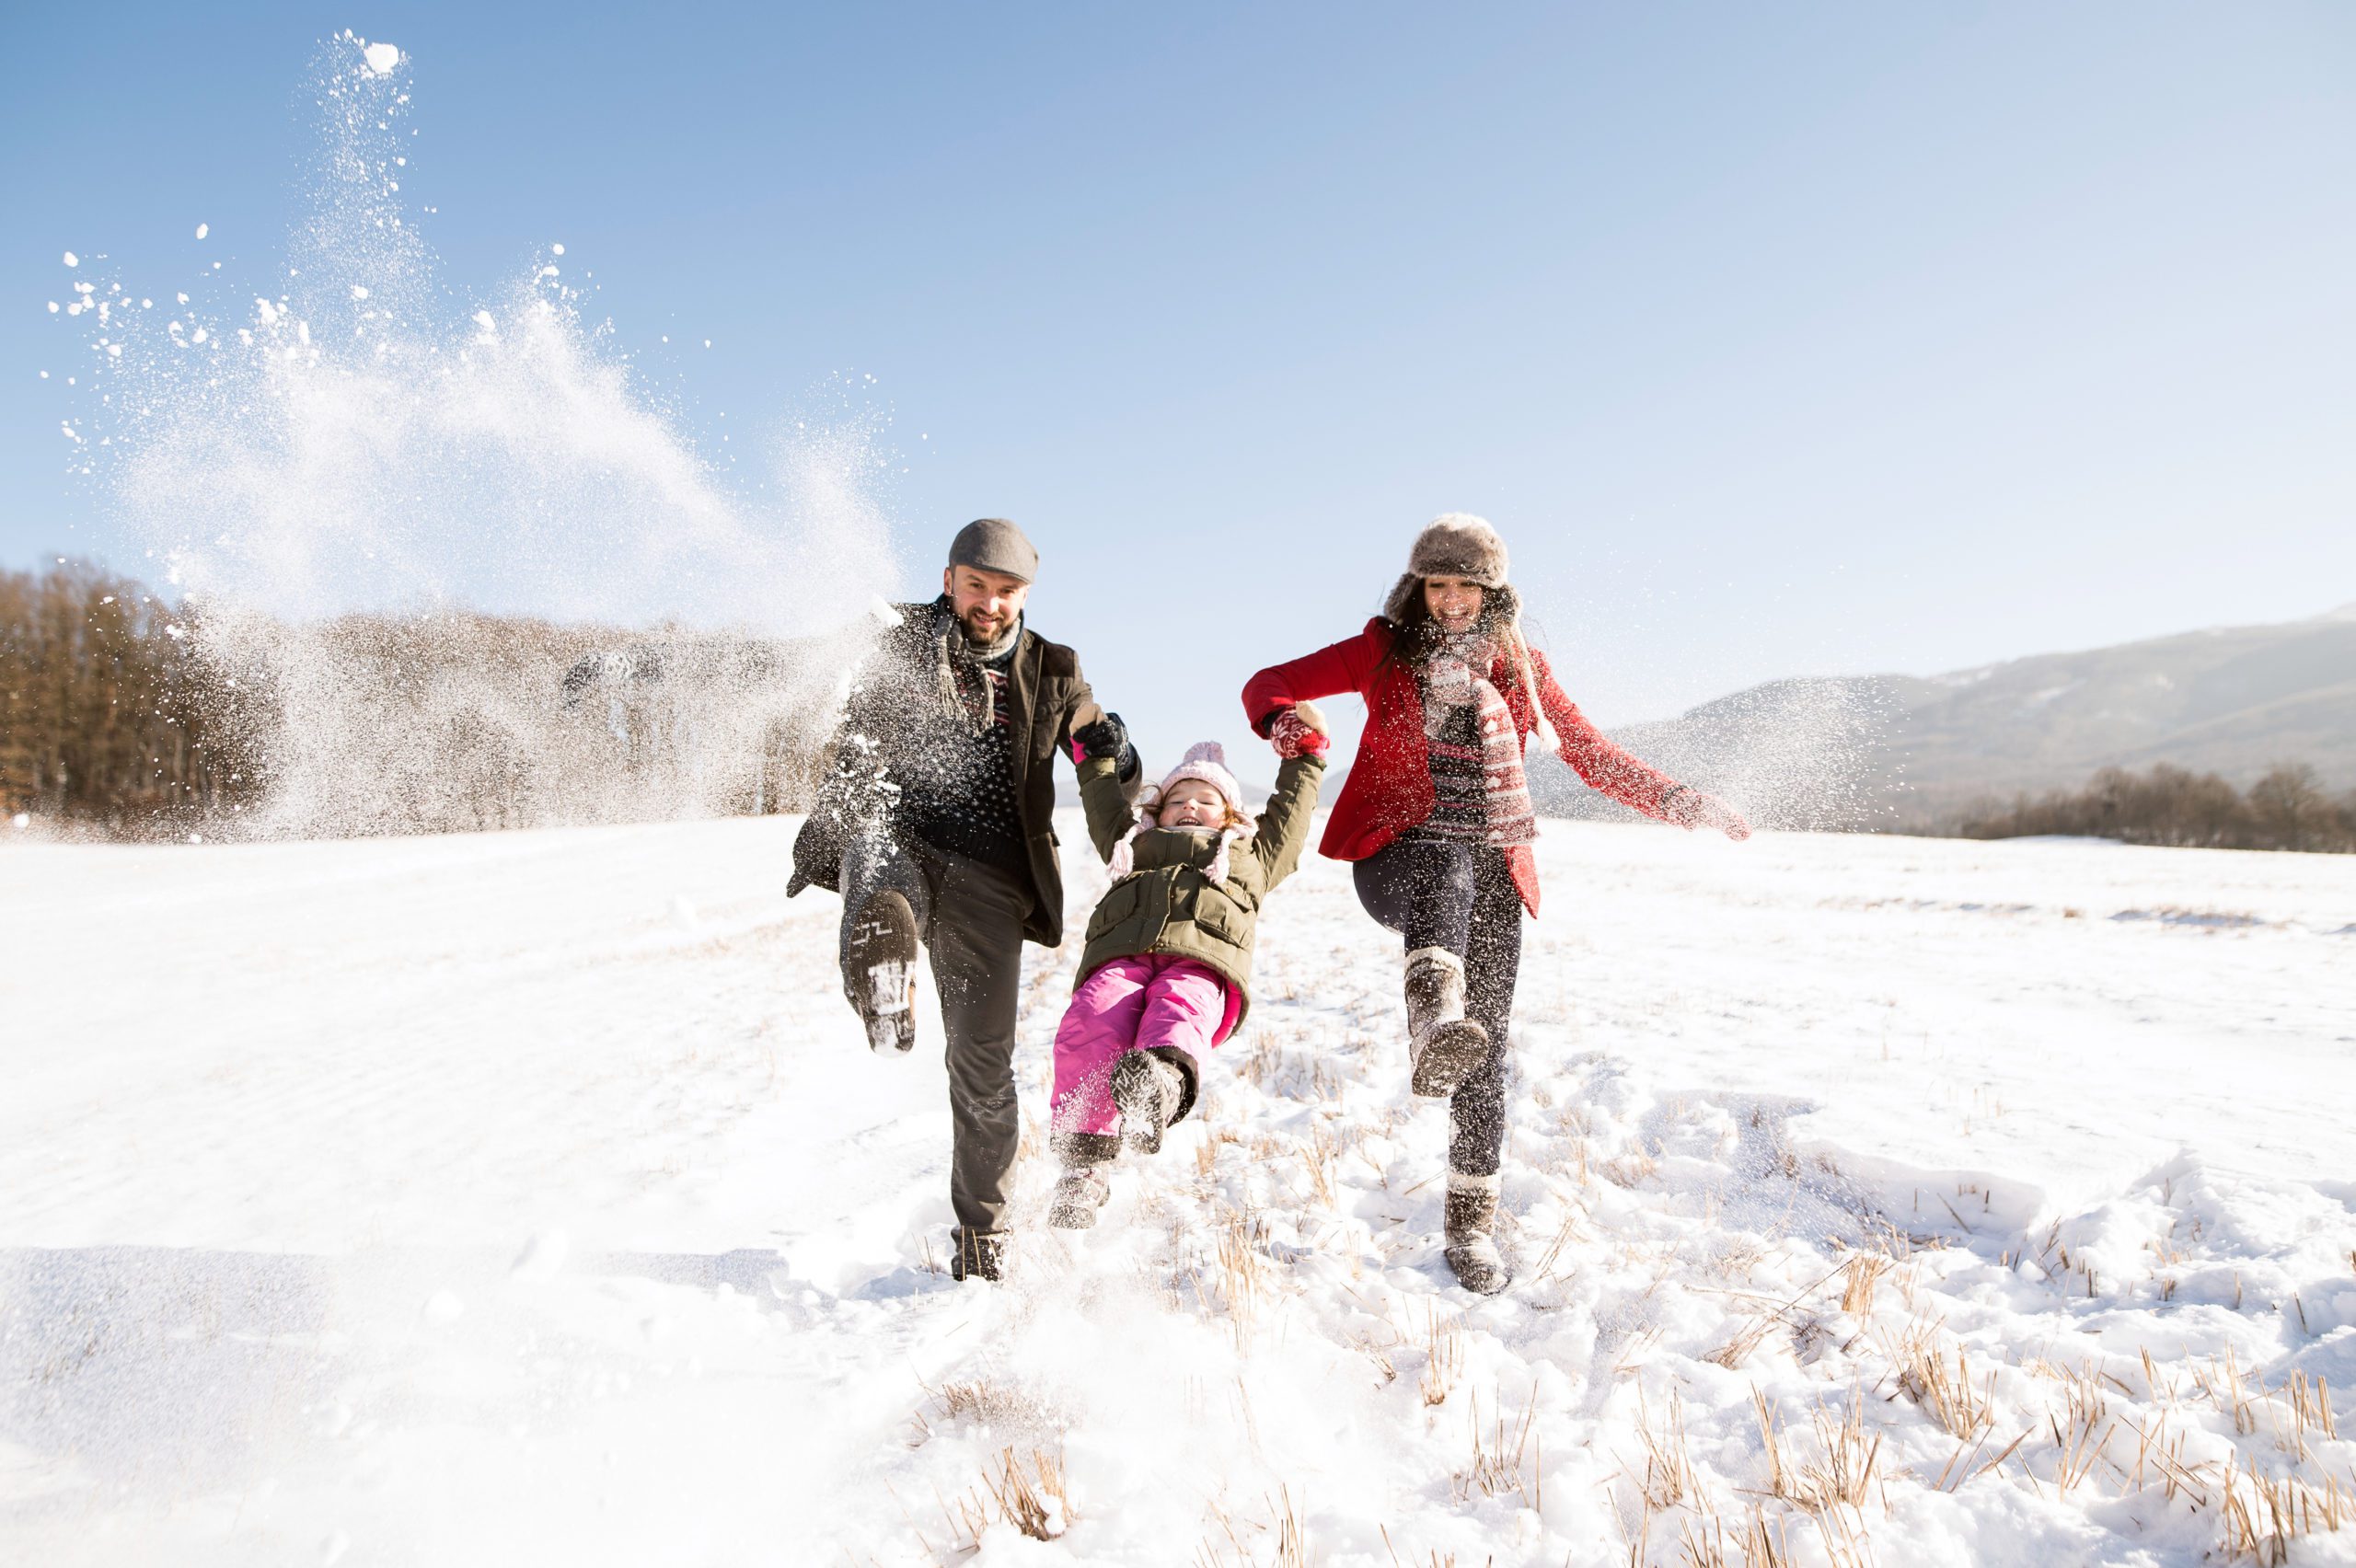 Играть в снежки кататься. Семья зимой. Семья зима снег. Семейная прогулка зимой. Семья гуляет зимой.